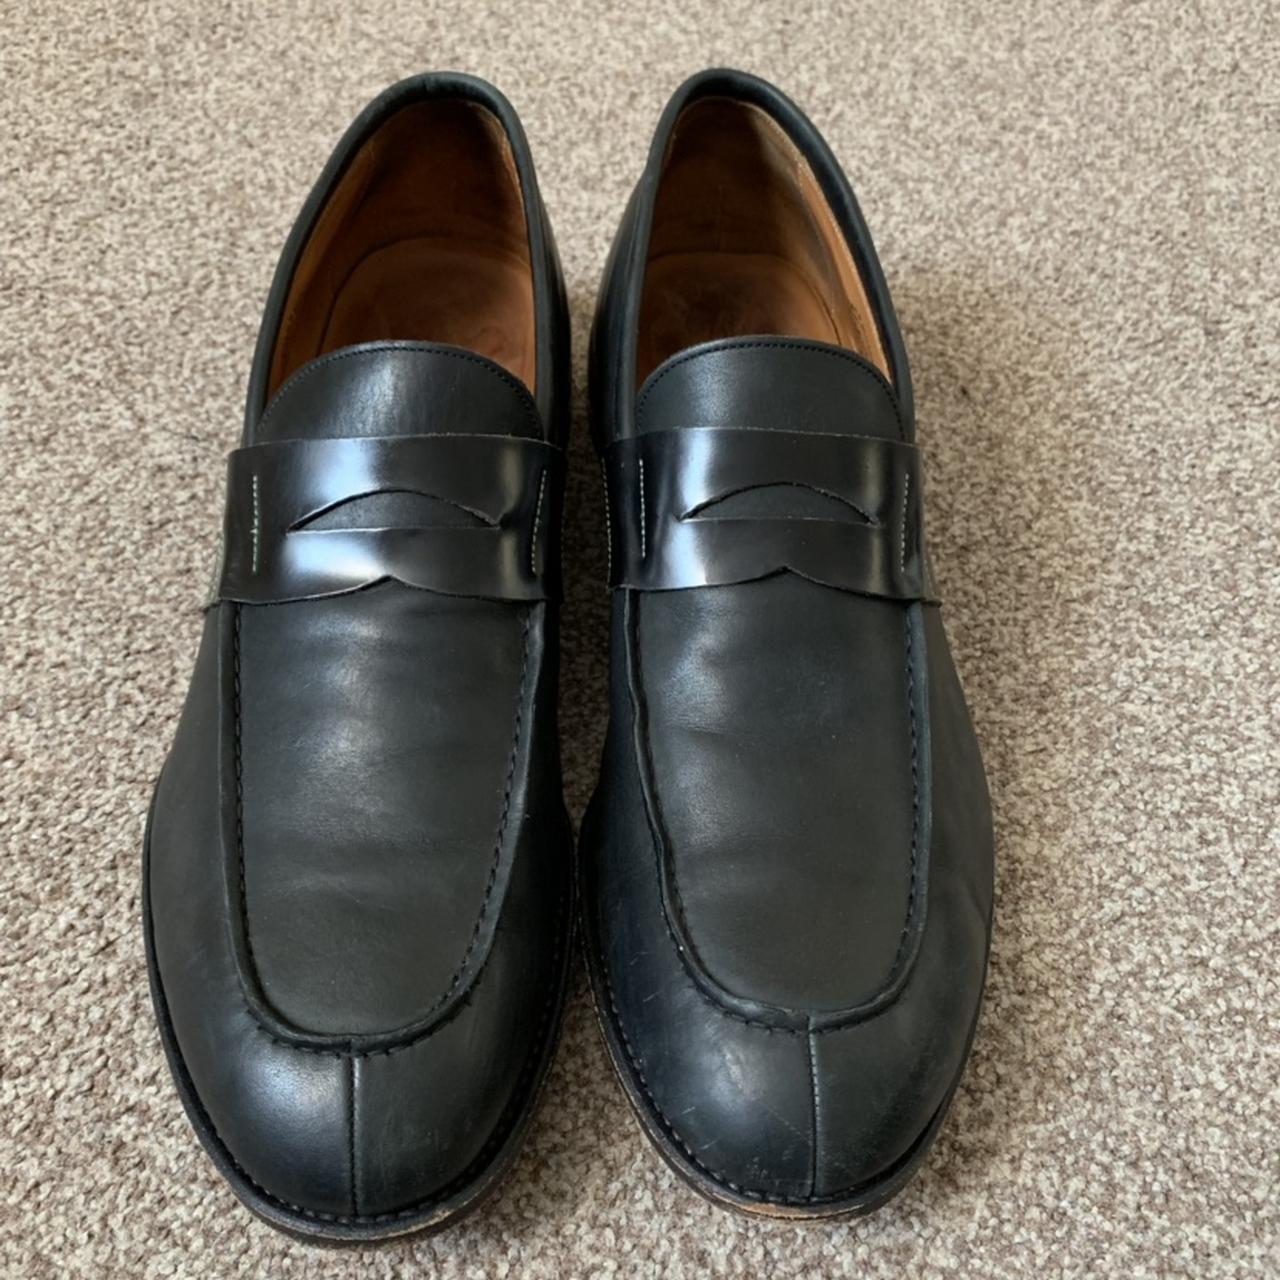 John Henry Black Leather Men Shoes Shoes Size UK 12.... - Depop